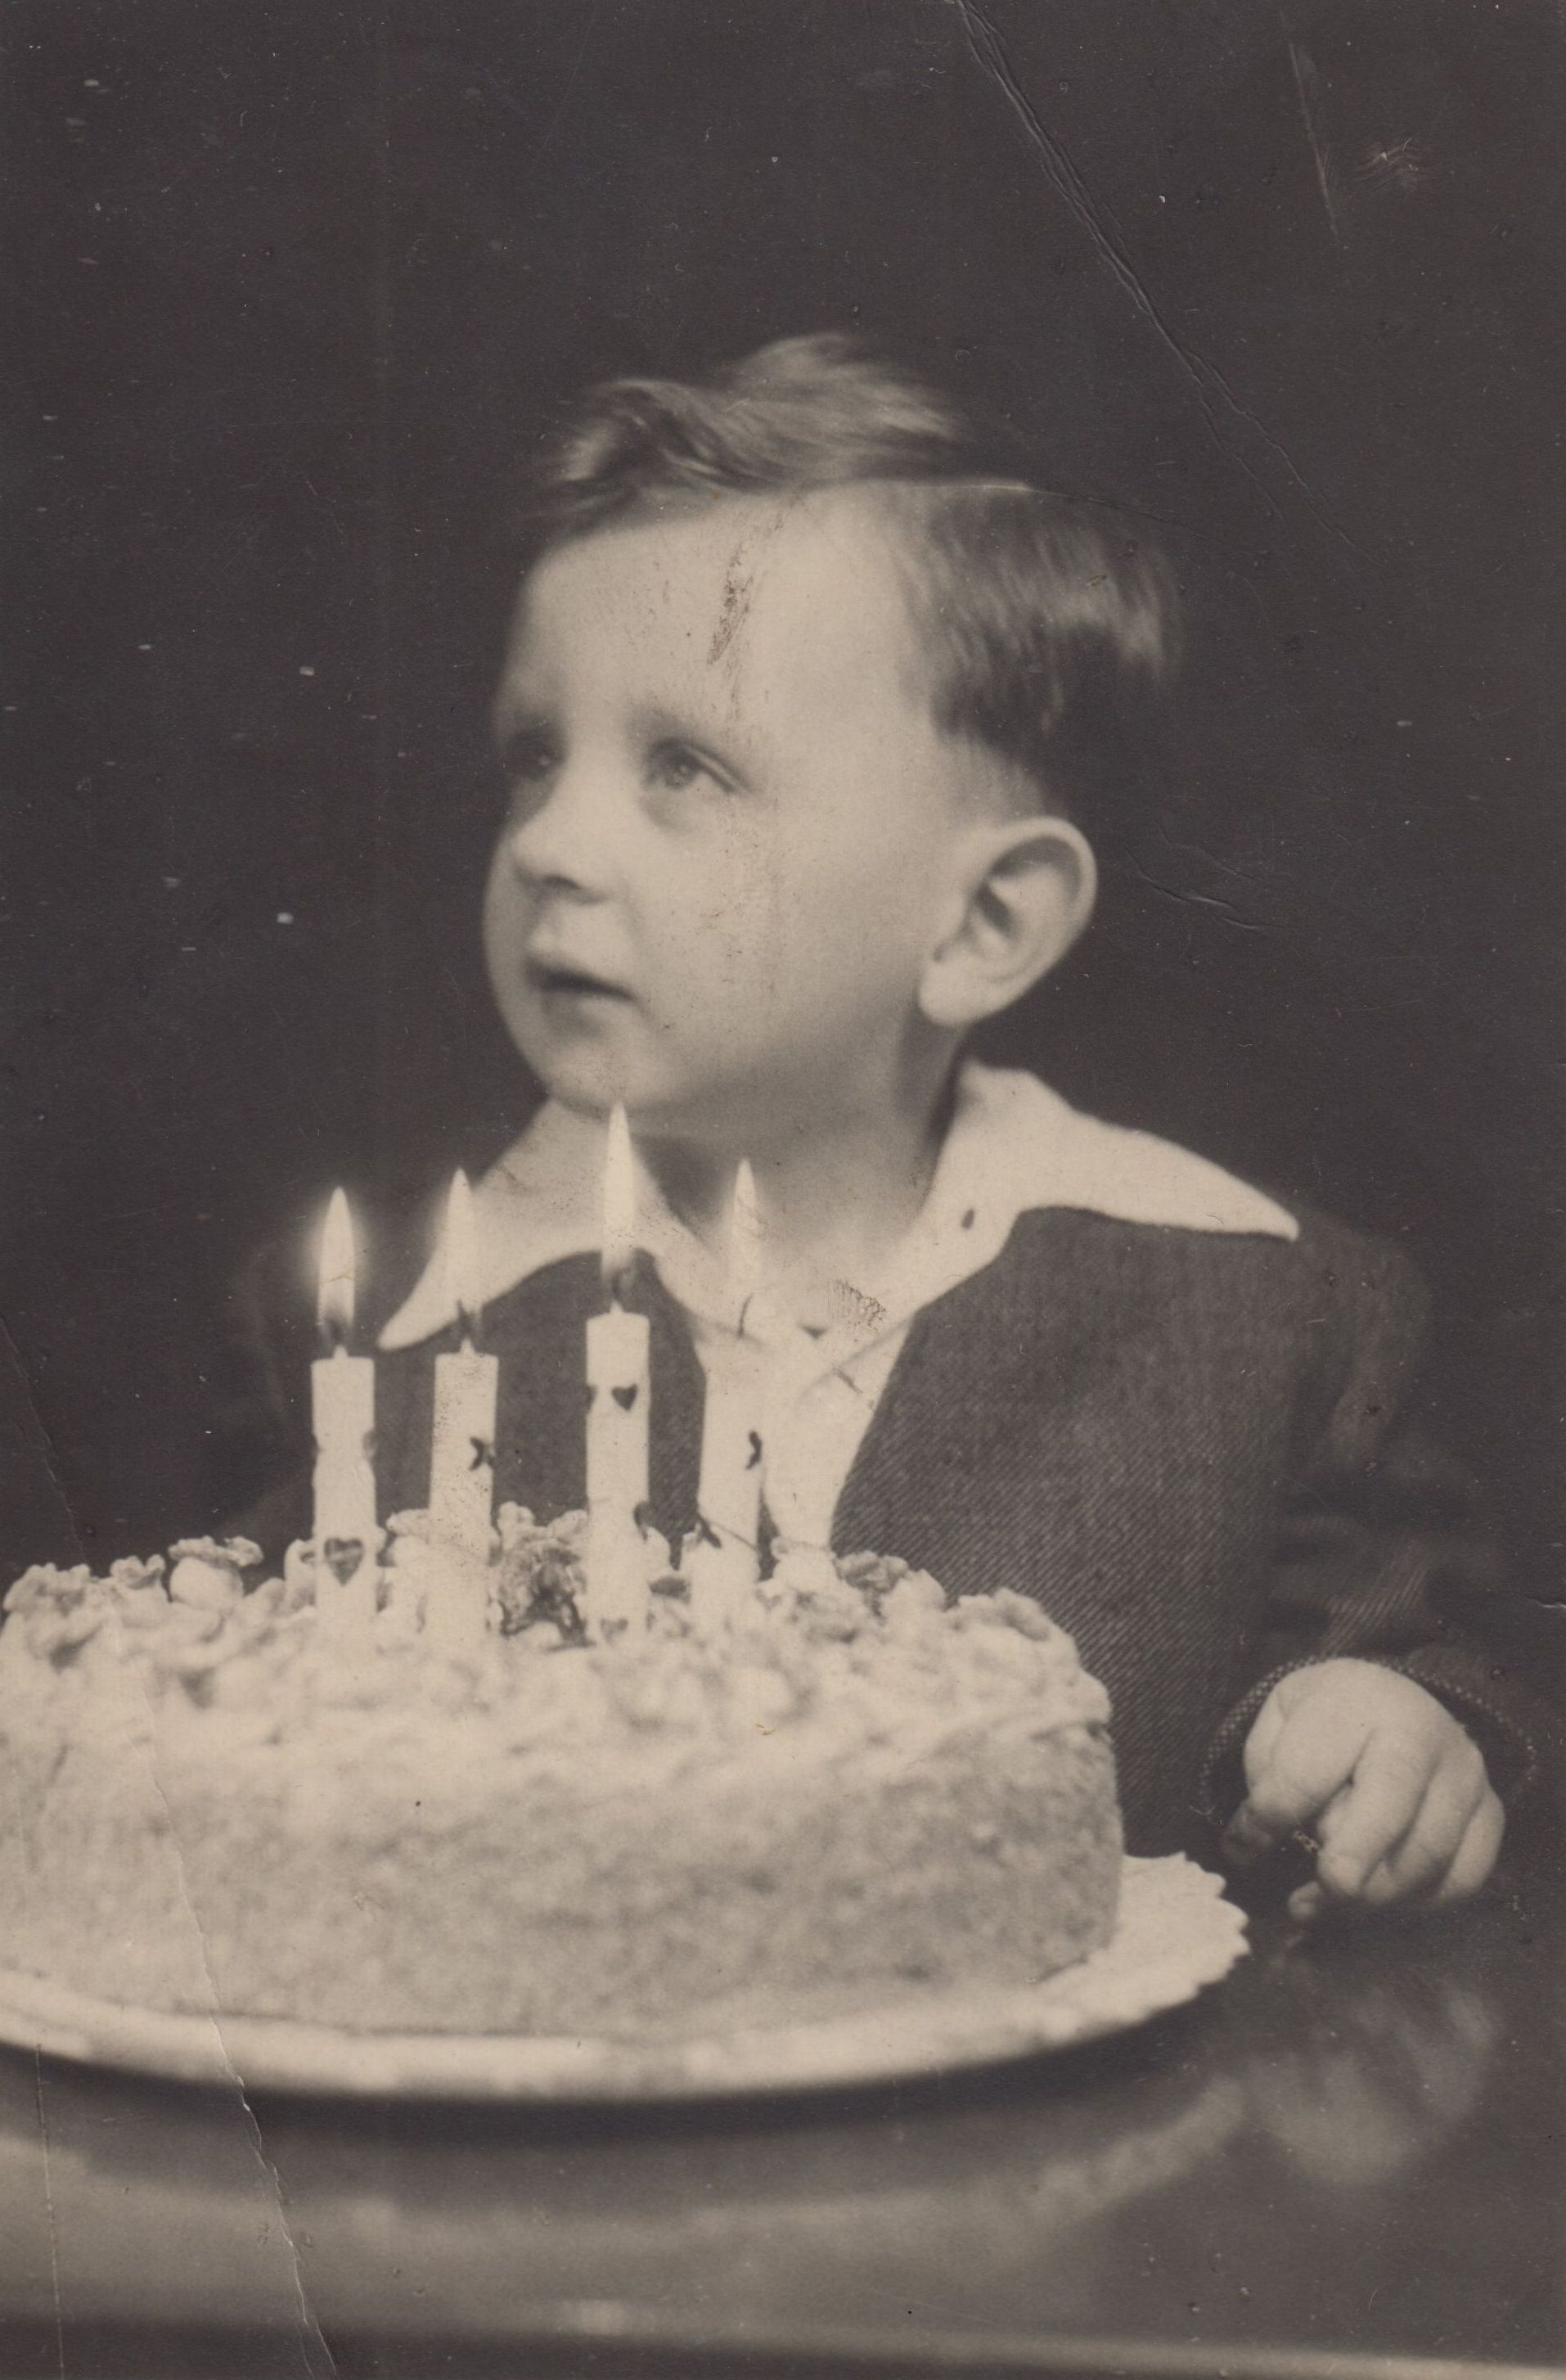 Lubomír Strážnický's fourth birthday, 1949